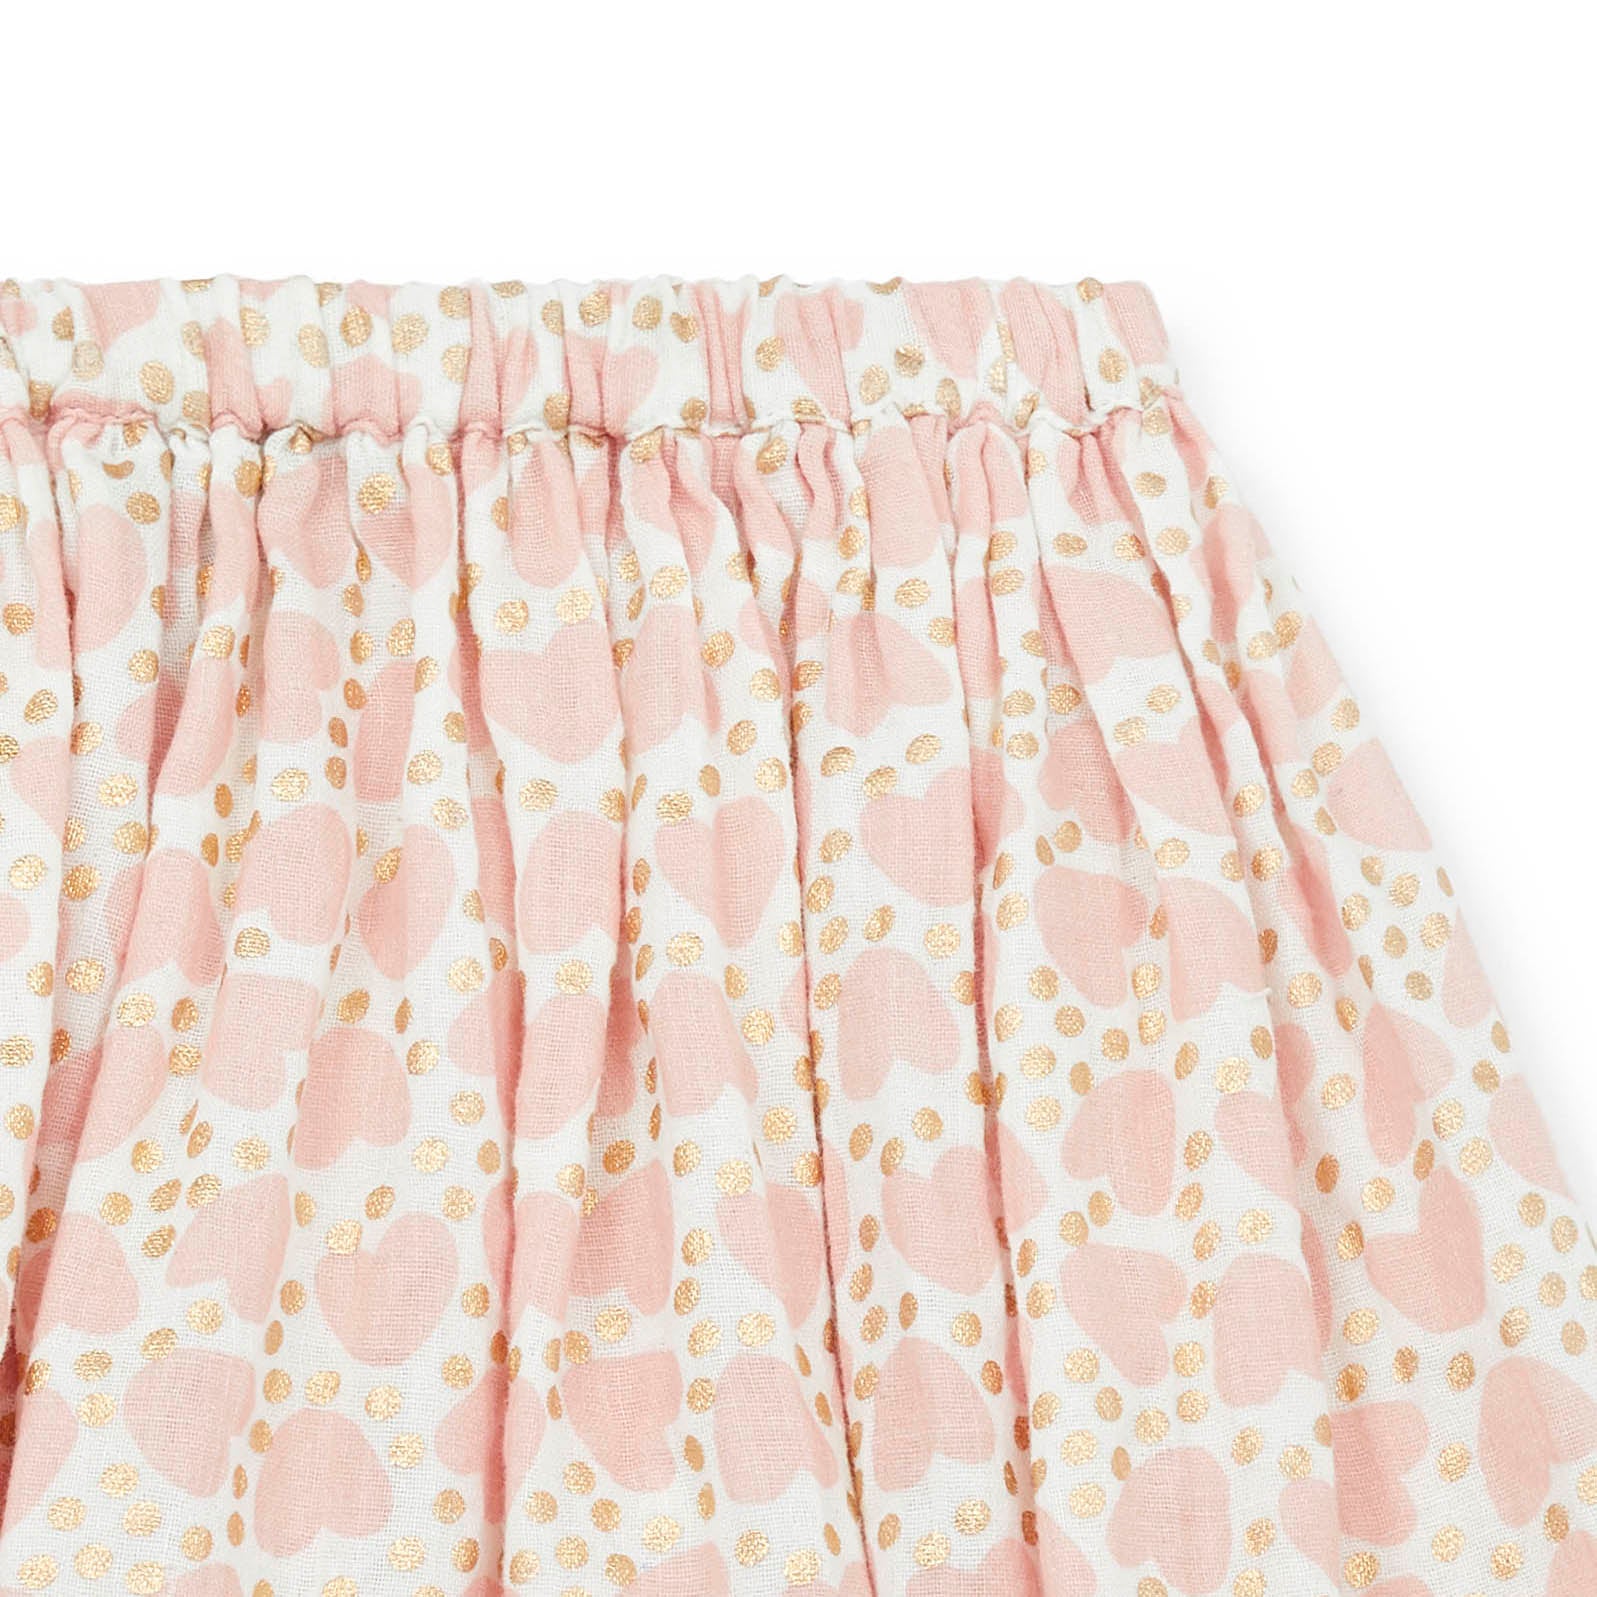 Girls Pink Heart Cotton Skirt